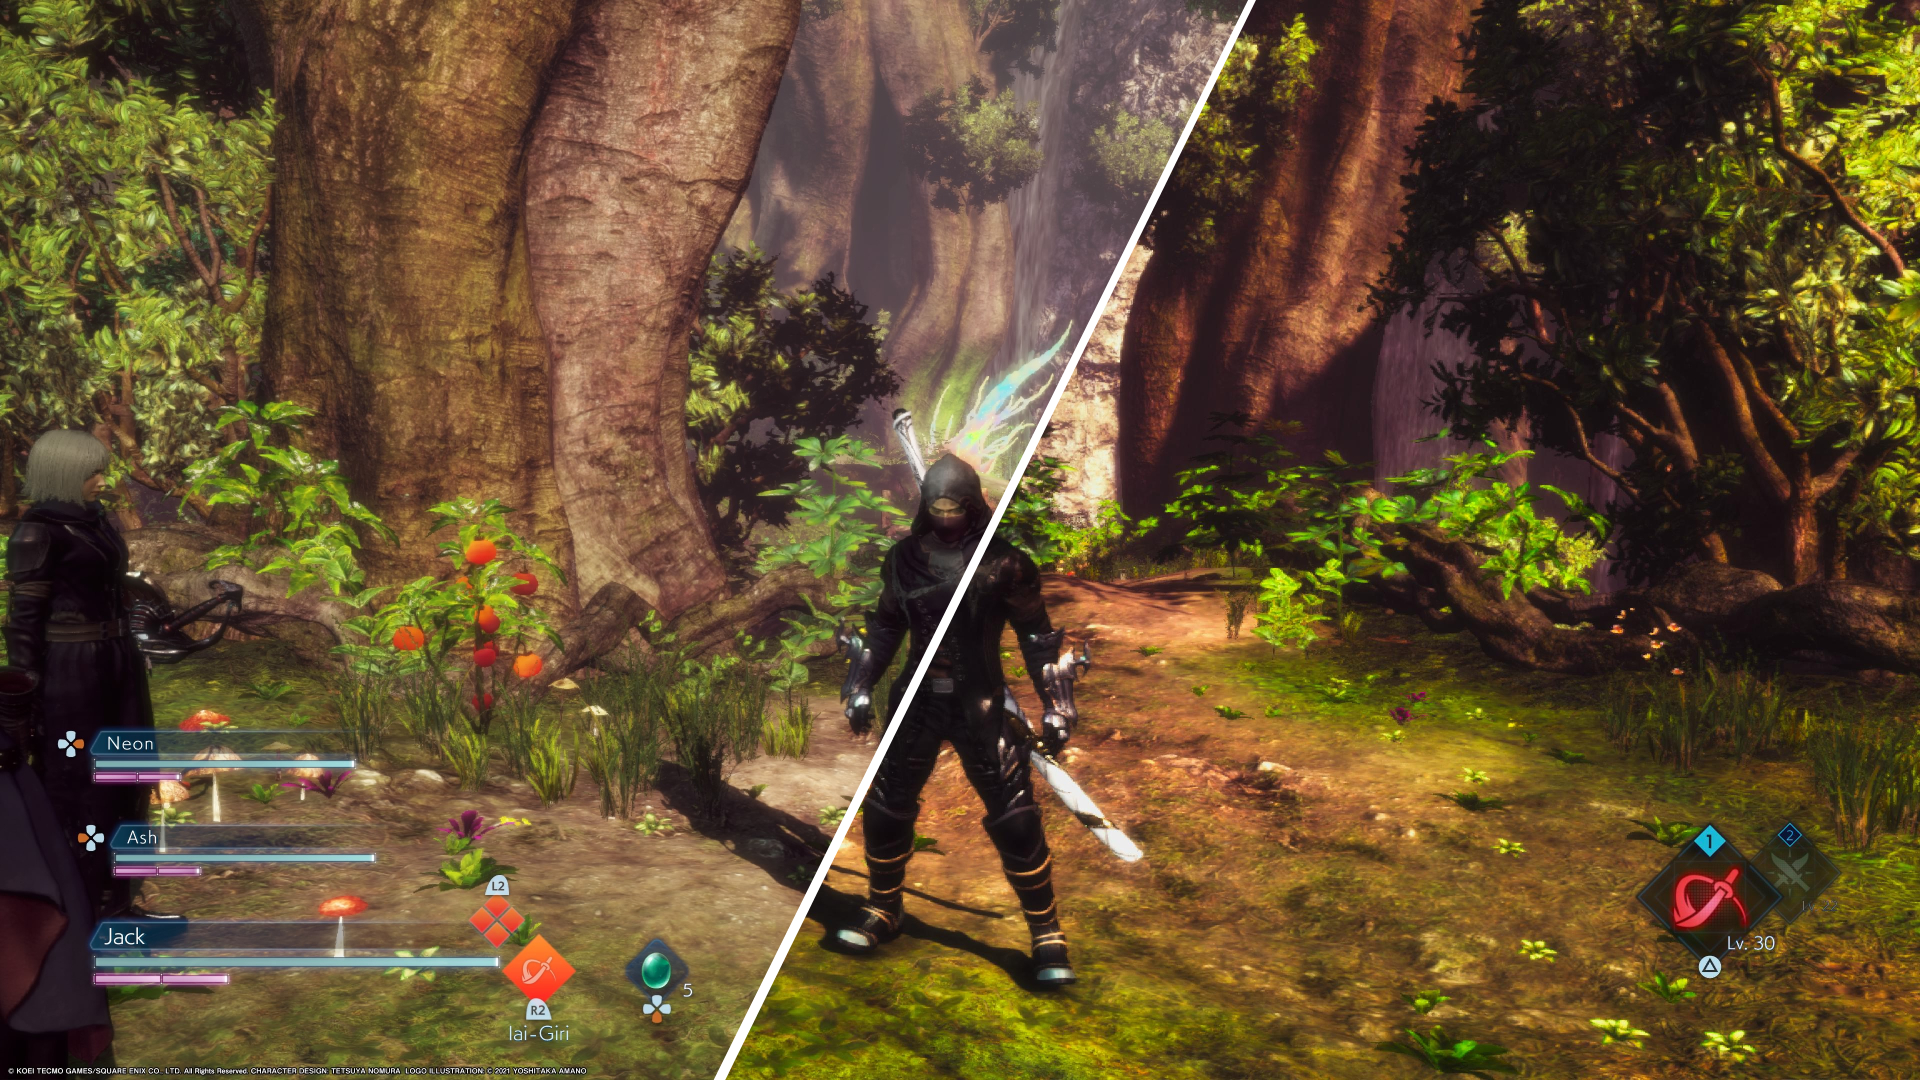 Jogo PS4 Stranger Of Paradise Final Fantasy Origin - Faz a Boa!